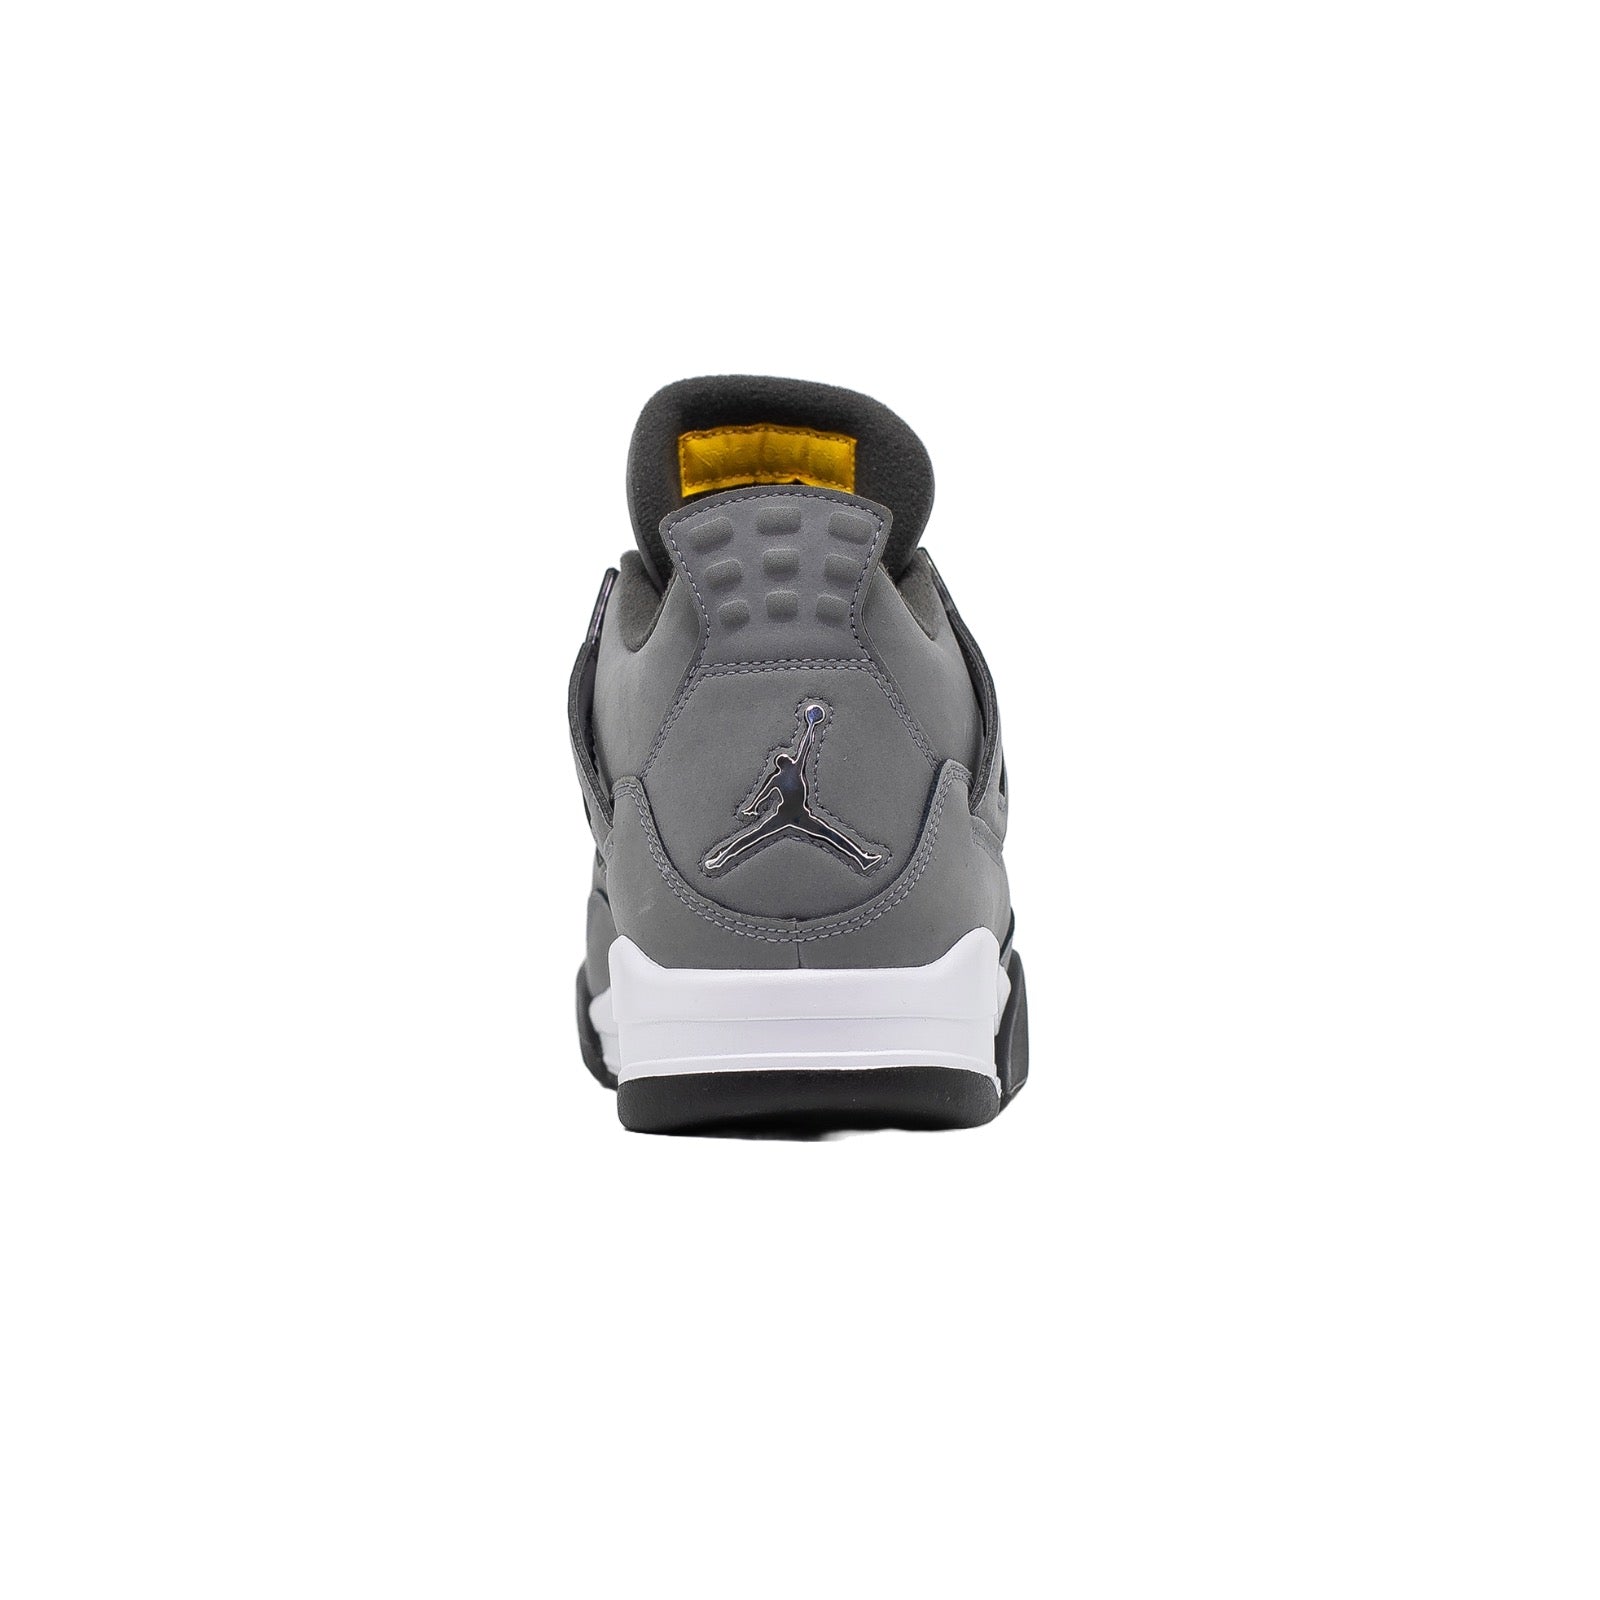 Air Jordan 4, Cool Grey (2019)